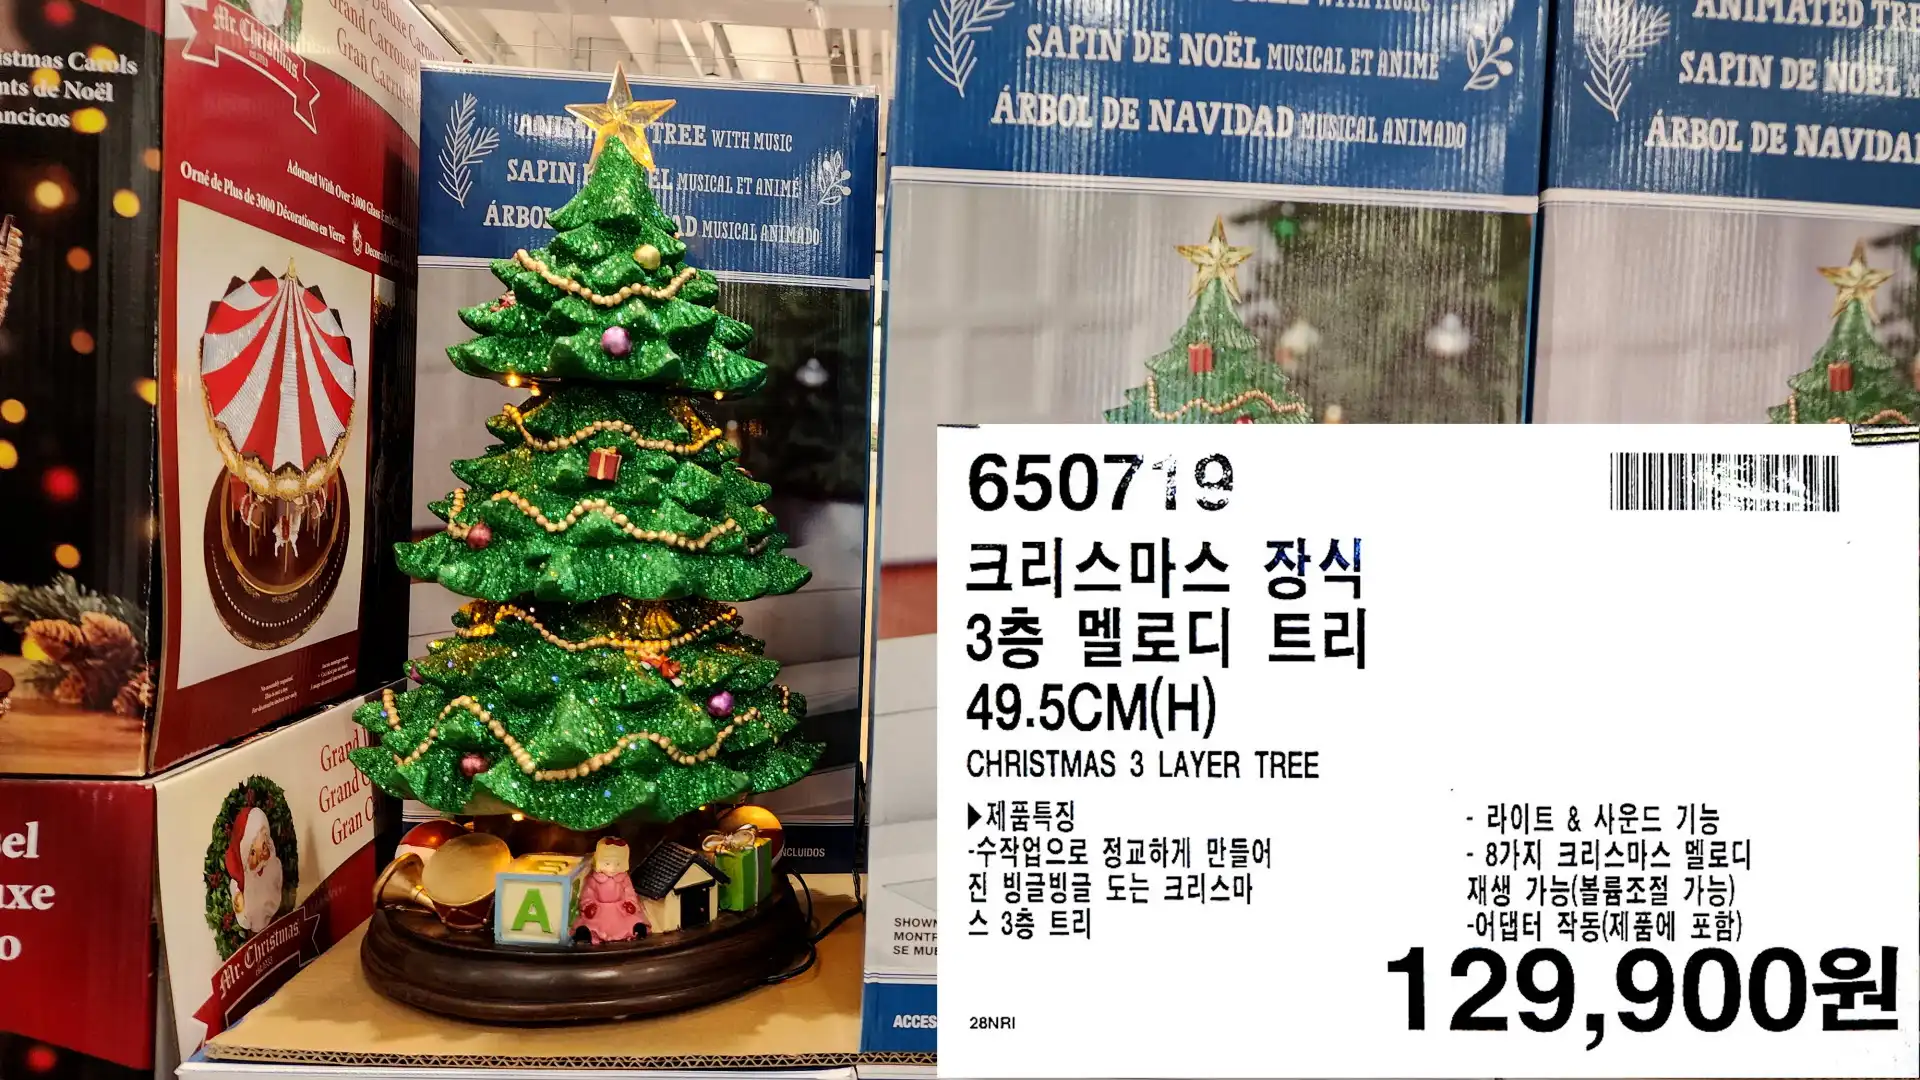 크리스마스 장식
3층 멜로디 트리
49.5CM(H)
CHRISTMAS 3 LAYER TREE